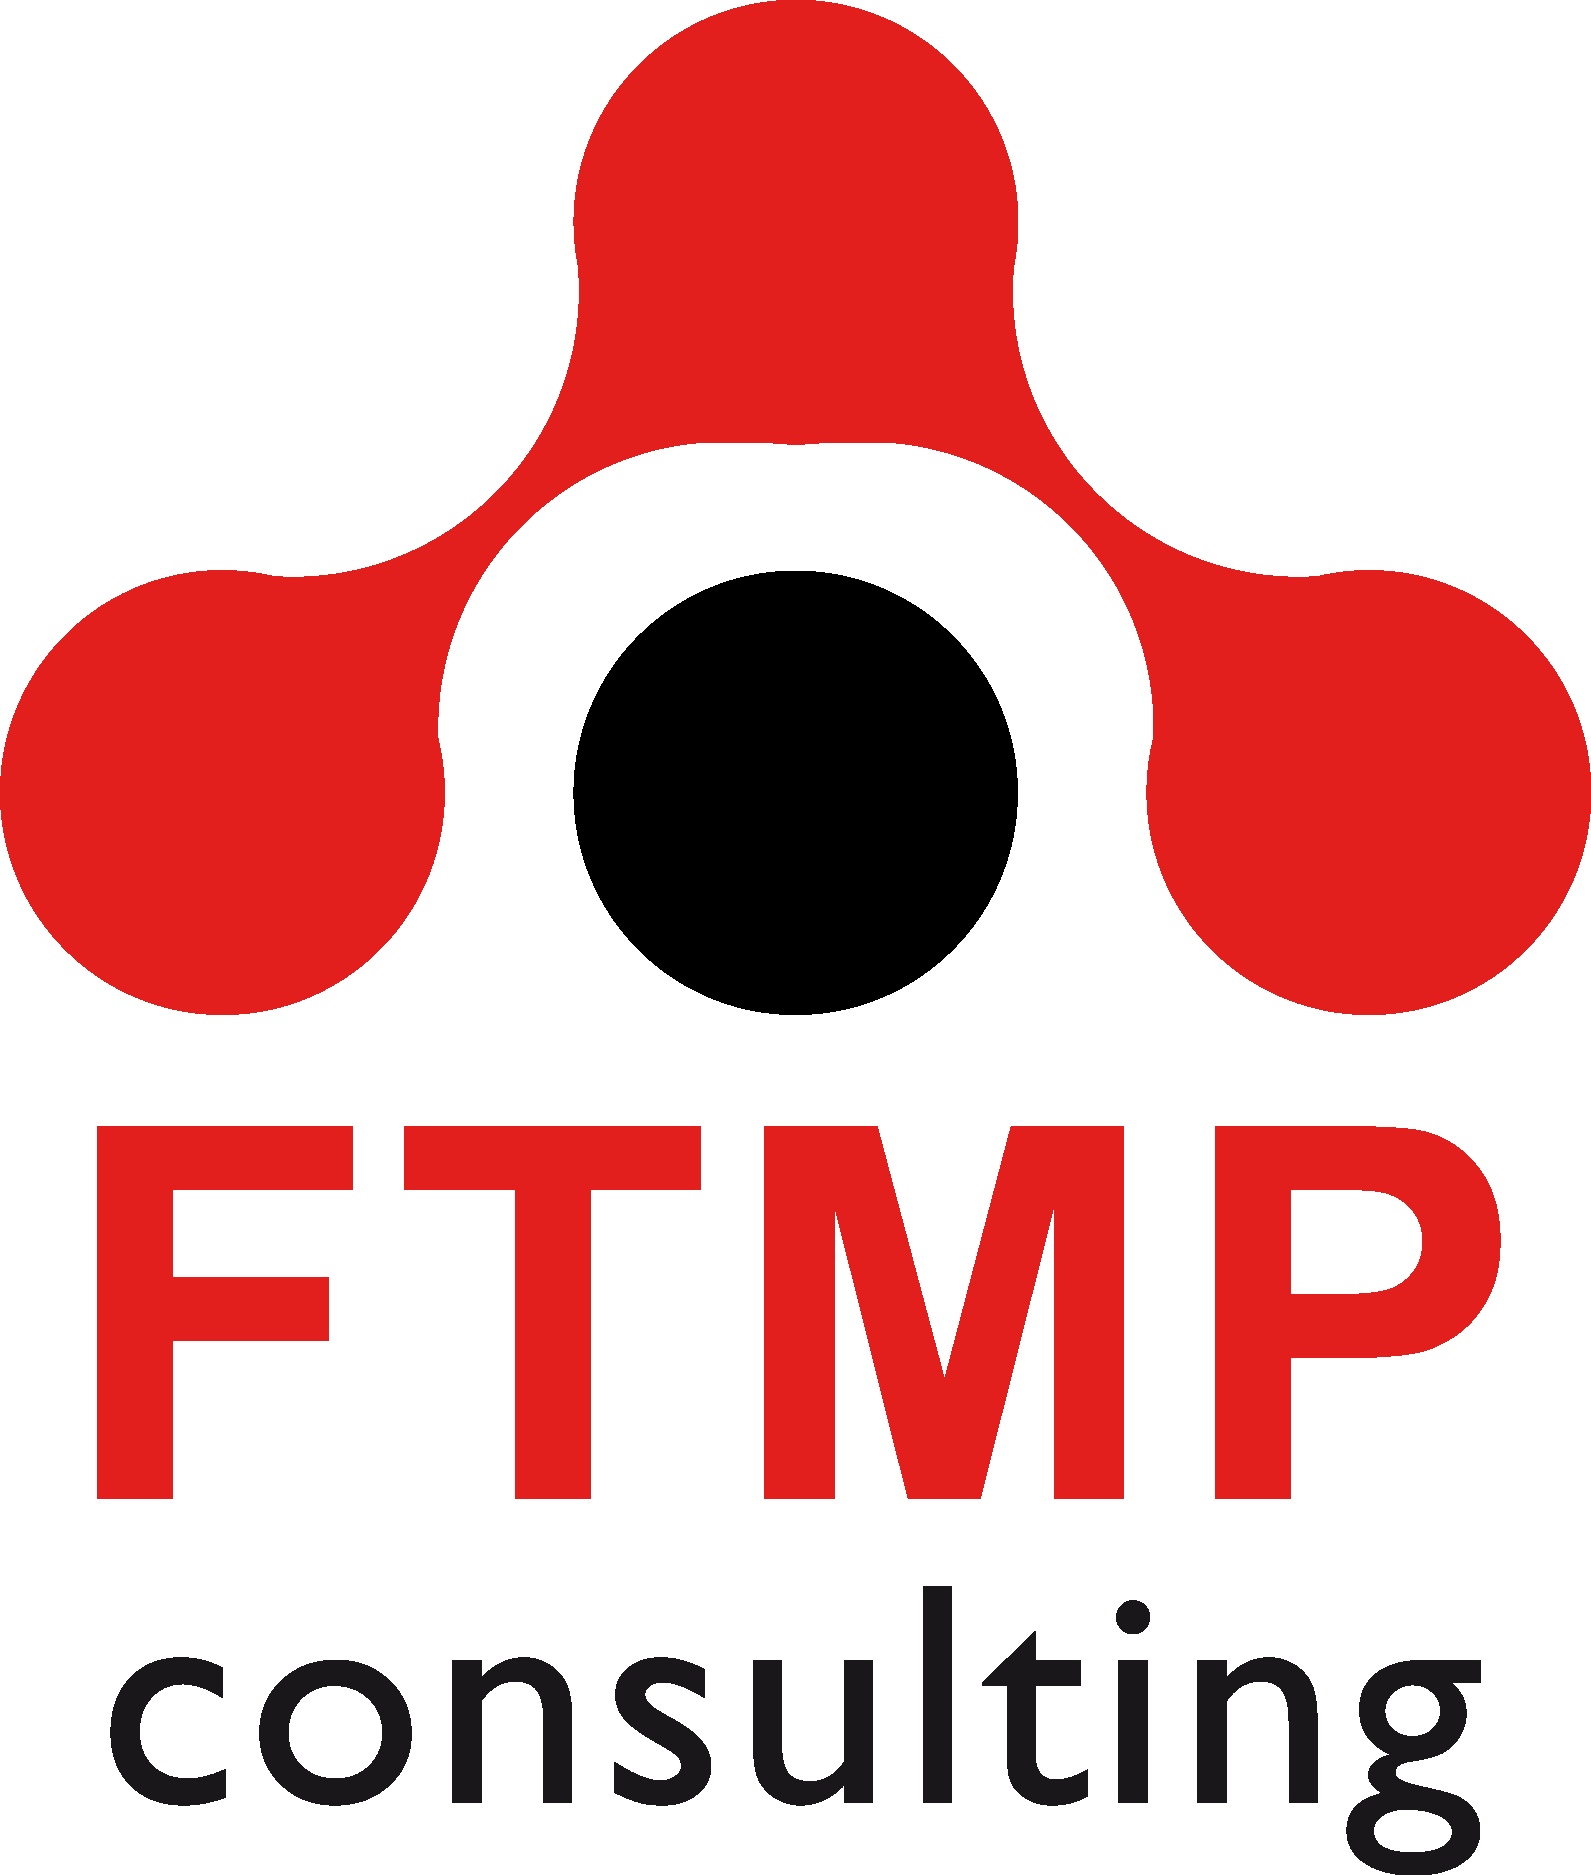 Ftmp Consulting Logo Vector